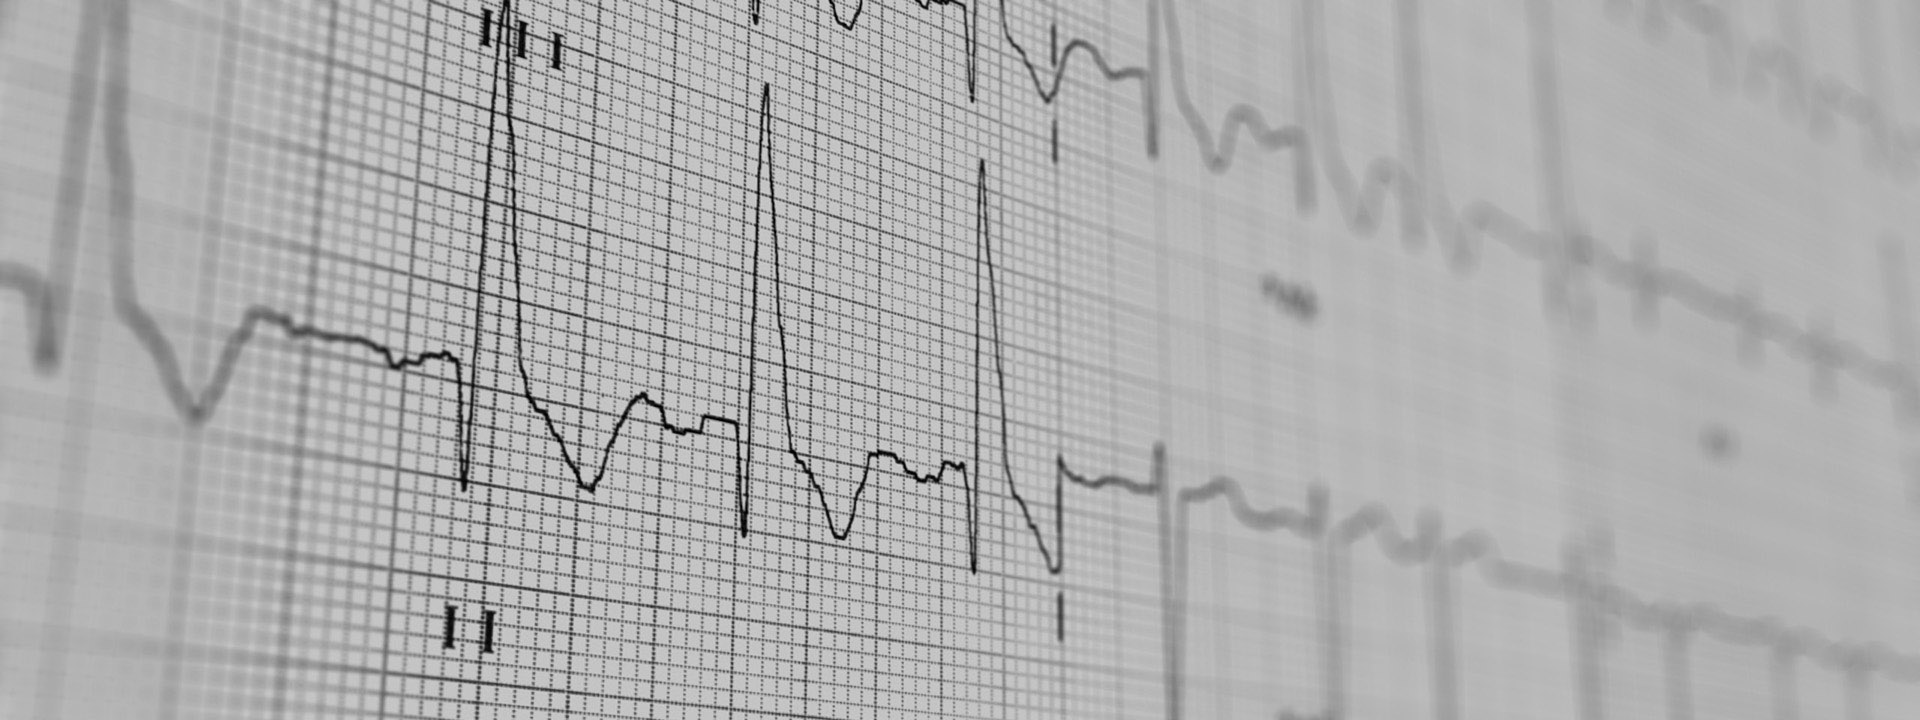 (Elektrokardiogramm) - Ableitung der elektrischen Aktivität des Herzens über die Körperoberfläche 